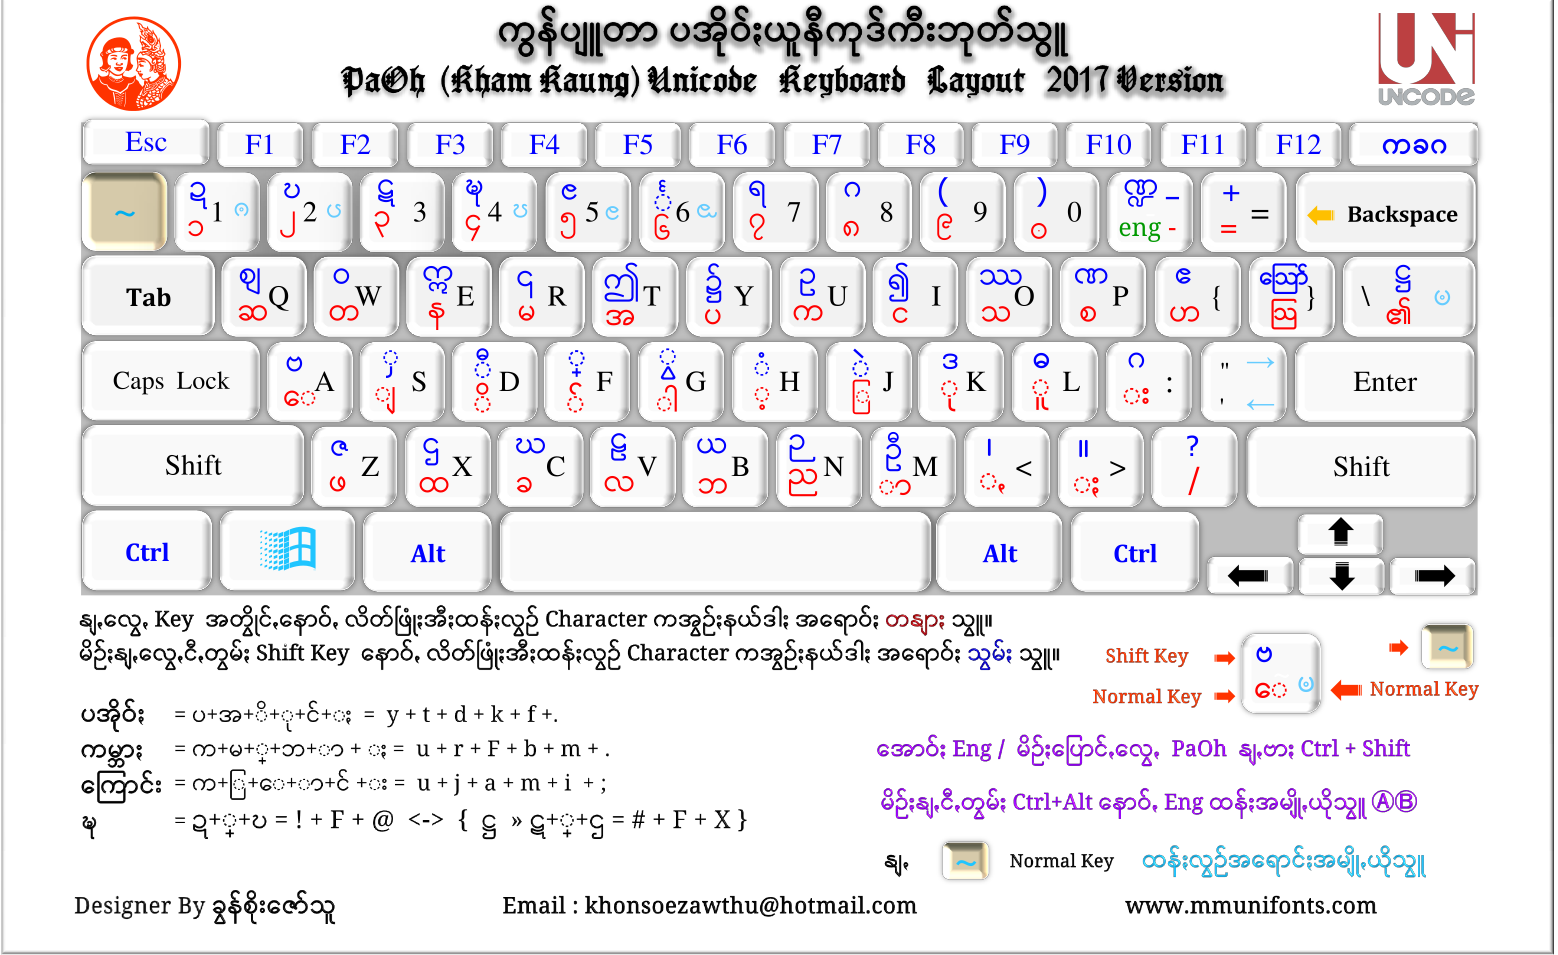 住人 使役 居間 unicode myanmar font for pc 勤勉 下向き グラフィック